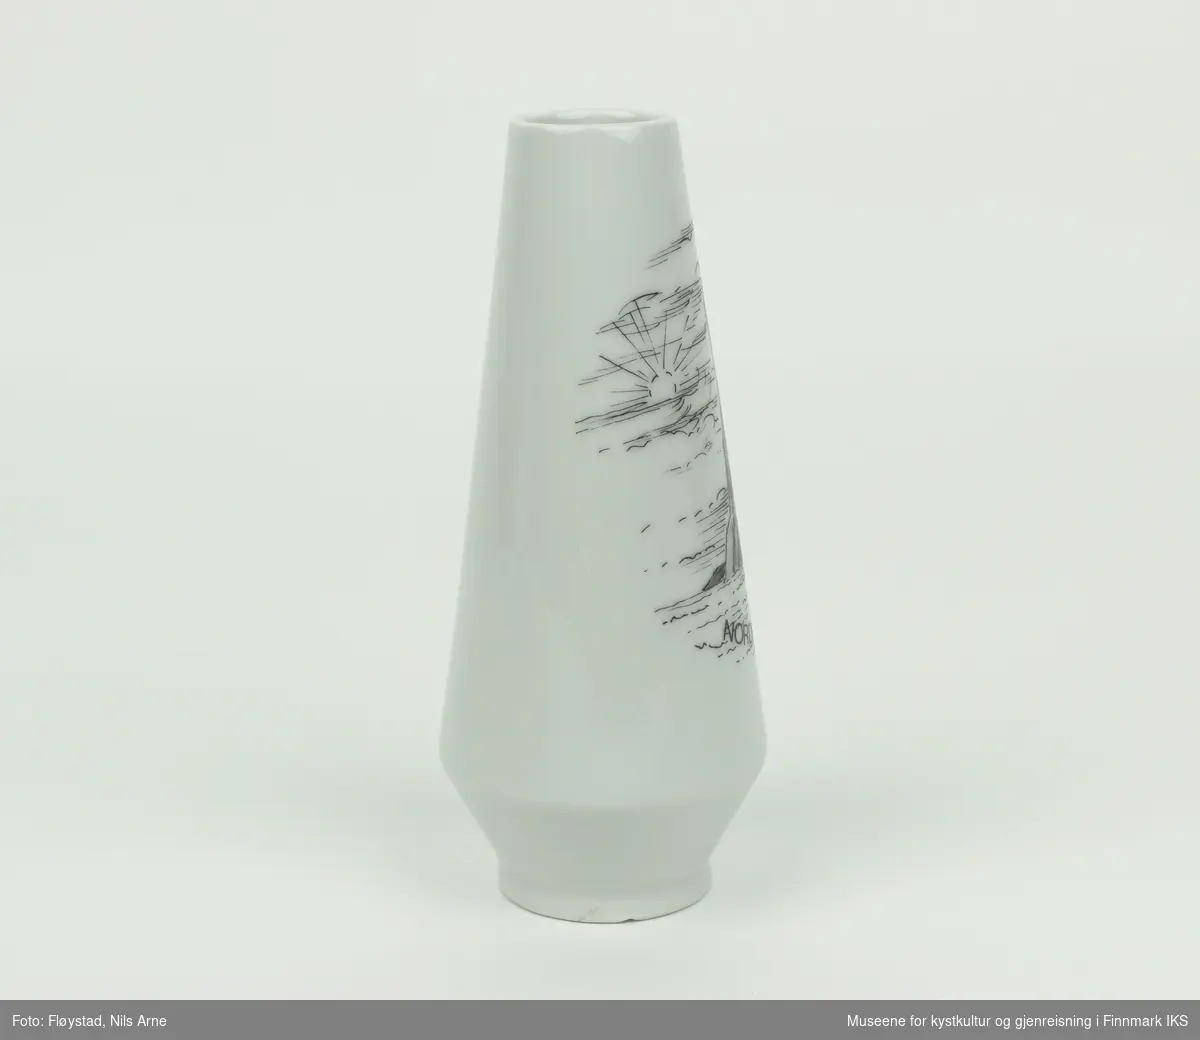 En balusterformet keramikkvase med en liten sirkulær munning og trykt dekor. Vasen er antakeligvis laget av bløtt porselen med hvit glasur. 
 
Dekoren er et sirkelformet trykt motiv av Nordkapplatået, med havet, sola og en lettskyet himmel i bakgrunnen. Nederst i motivet er det trykt "NORDKAPP" og de geografiske koordinatene "17°21''10", som antakeligvis kommer av en produksjonsfeil. De korrekte koordinatene er 71°10'21".